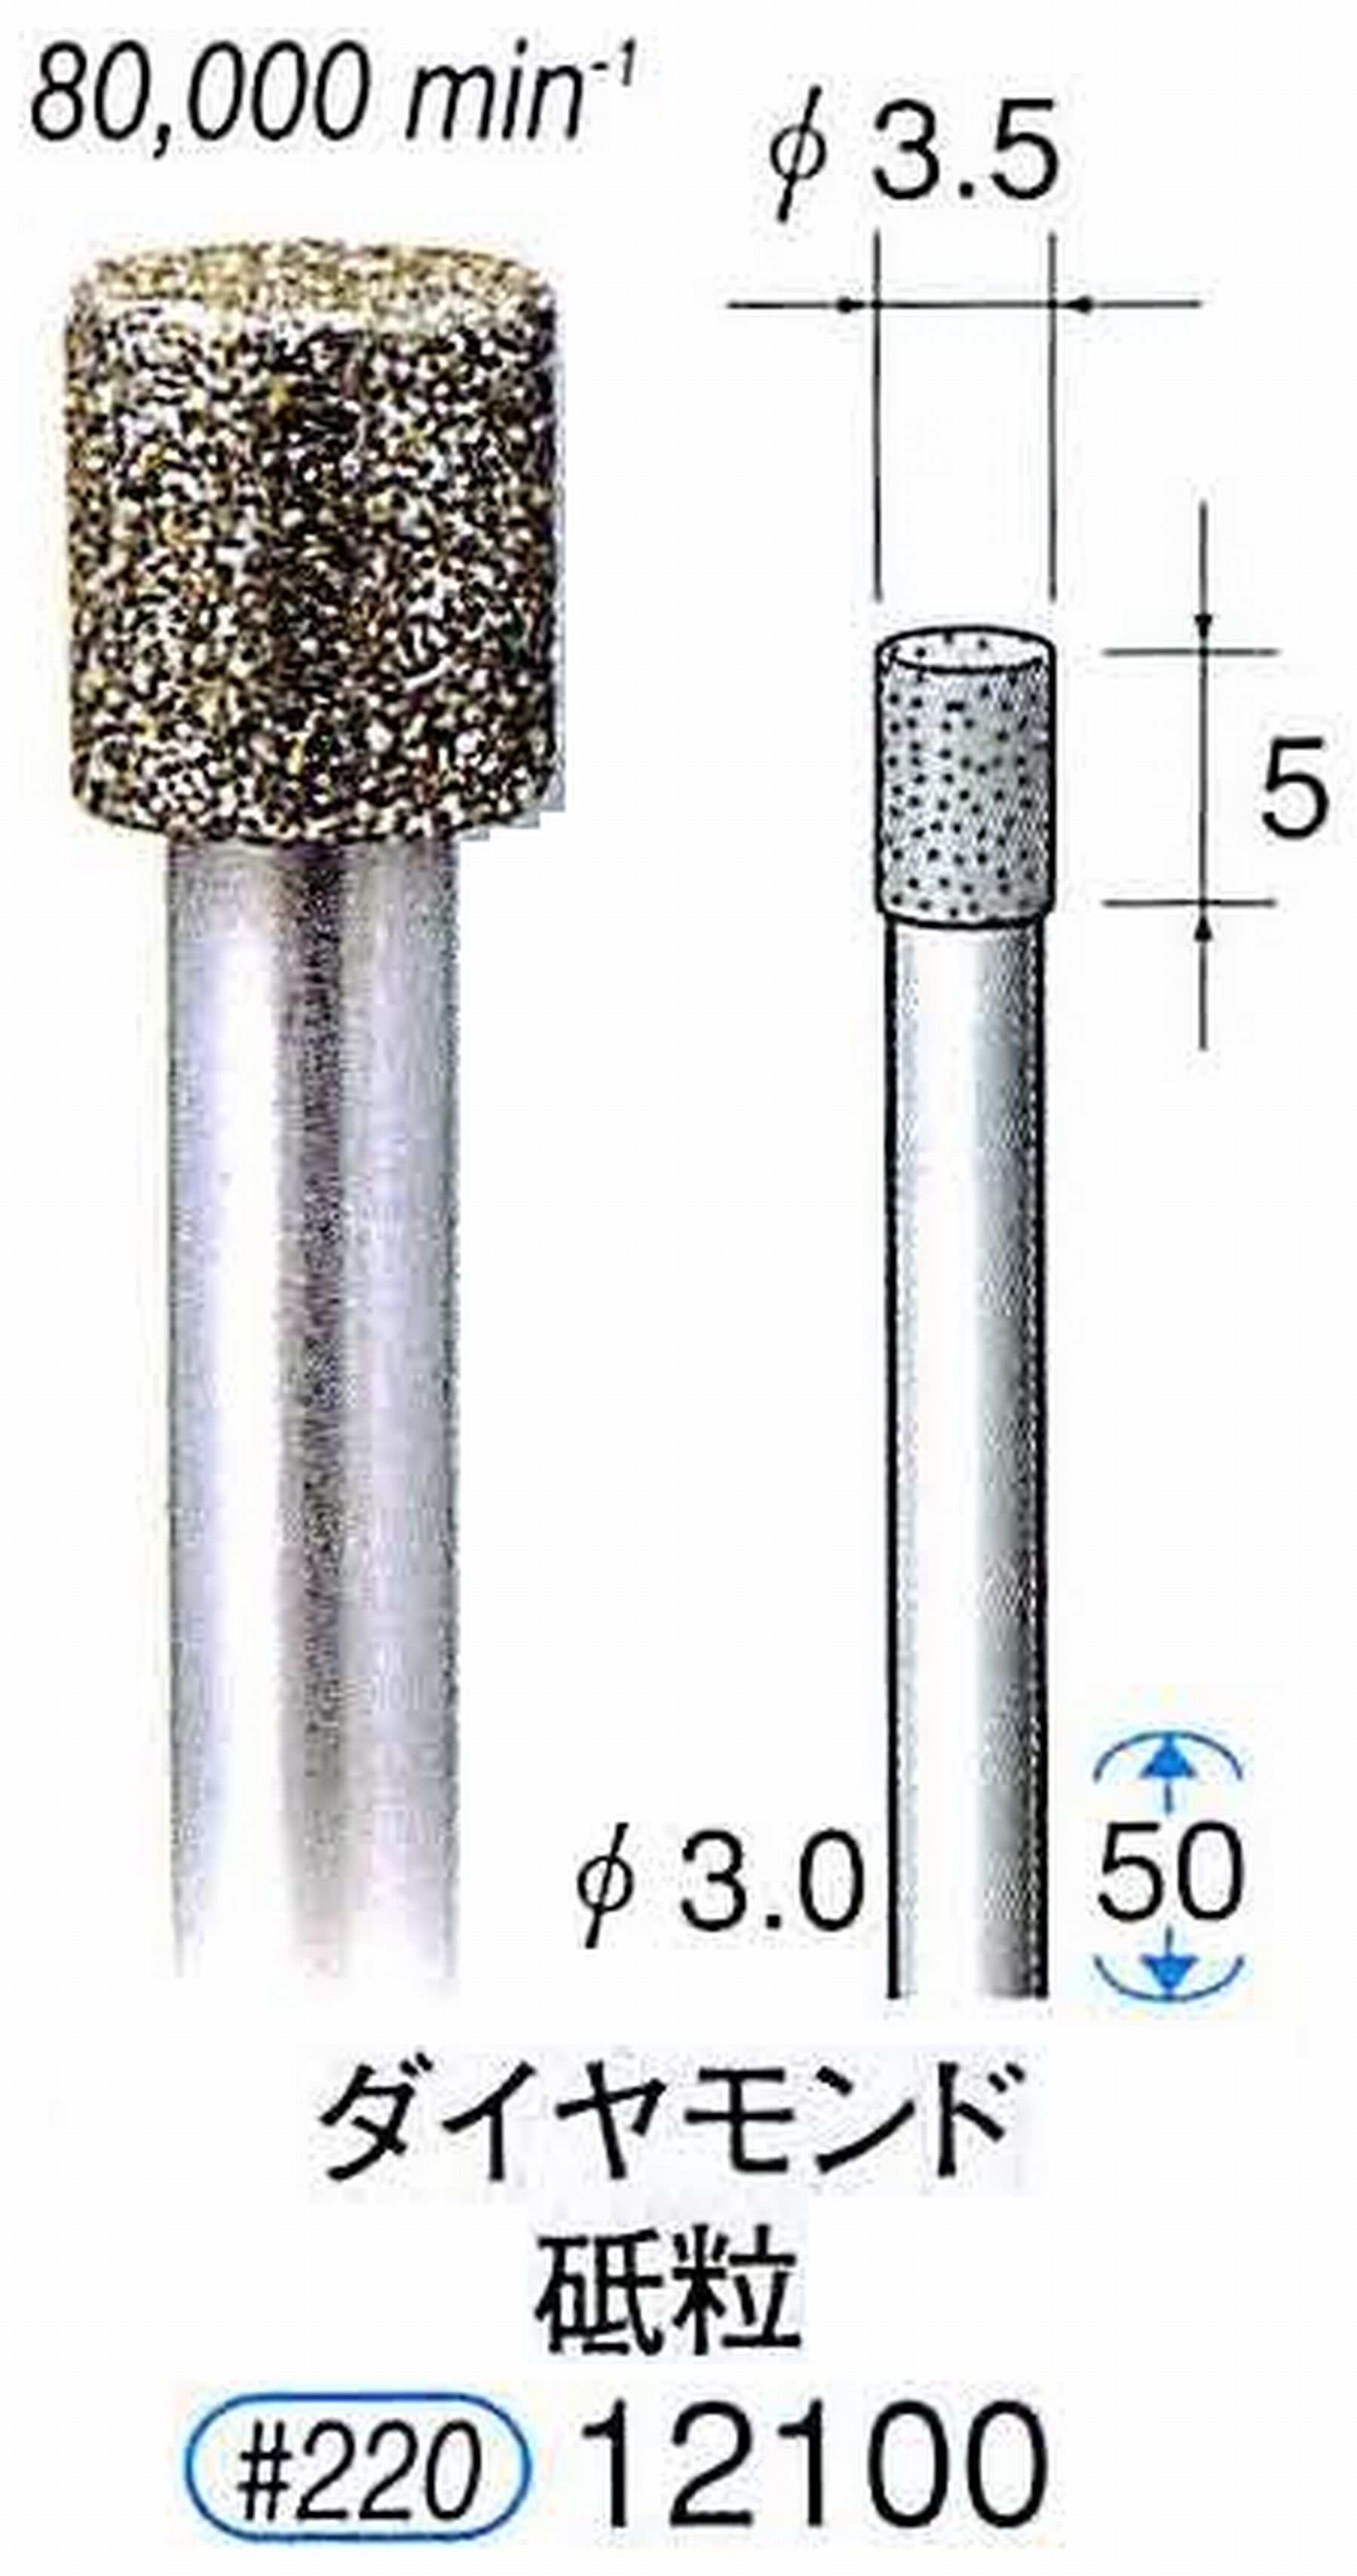 ナカニシ/NAKANISHI 電着ダイヤモンド ダイヤモンド砥粒 軸径(シャンク)φ3.0mm 12100